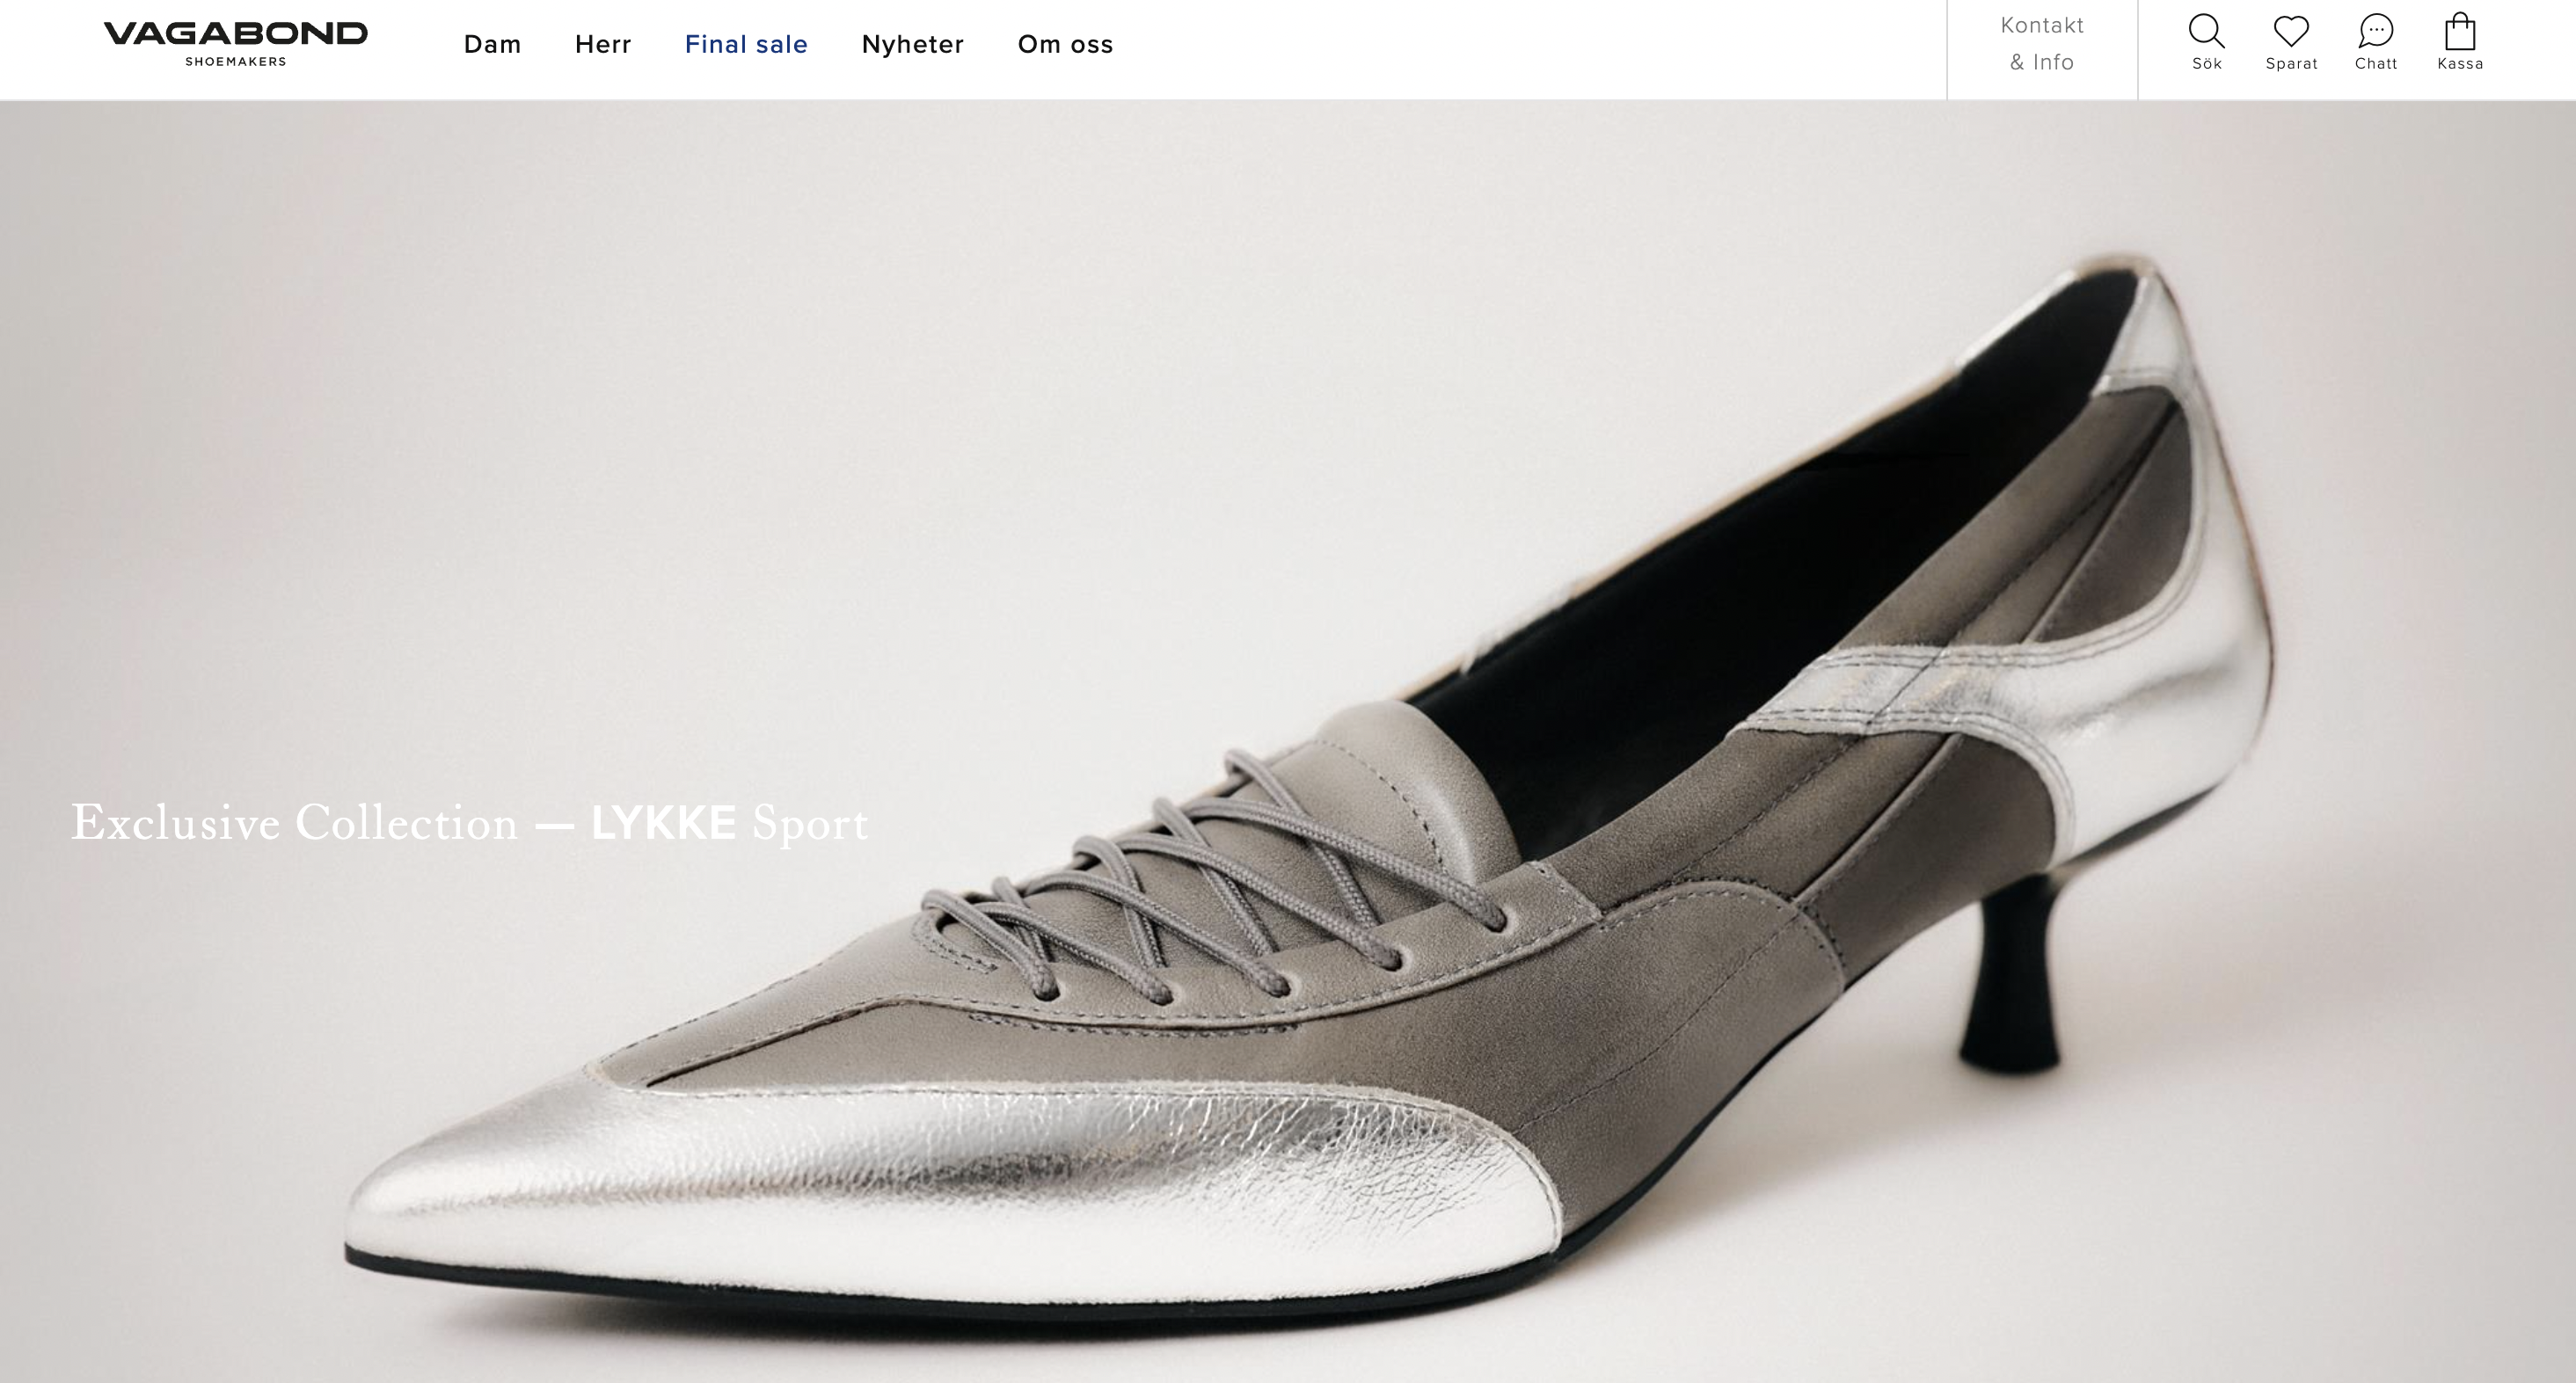 瑞典家族鞋履品牌 Vagabond Shoemakers 创始人将公司所有权赠予慈善基金会